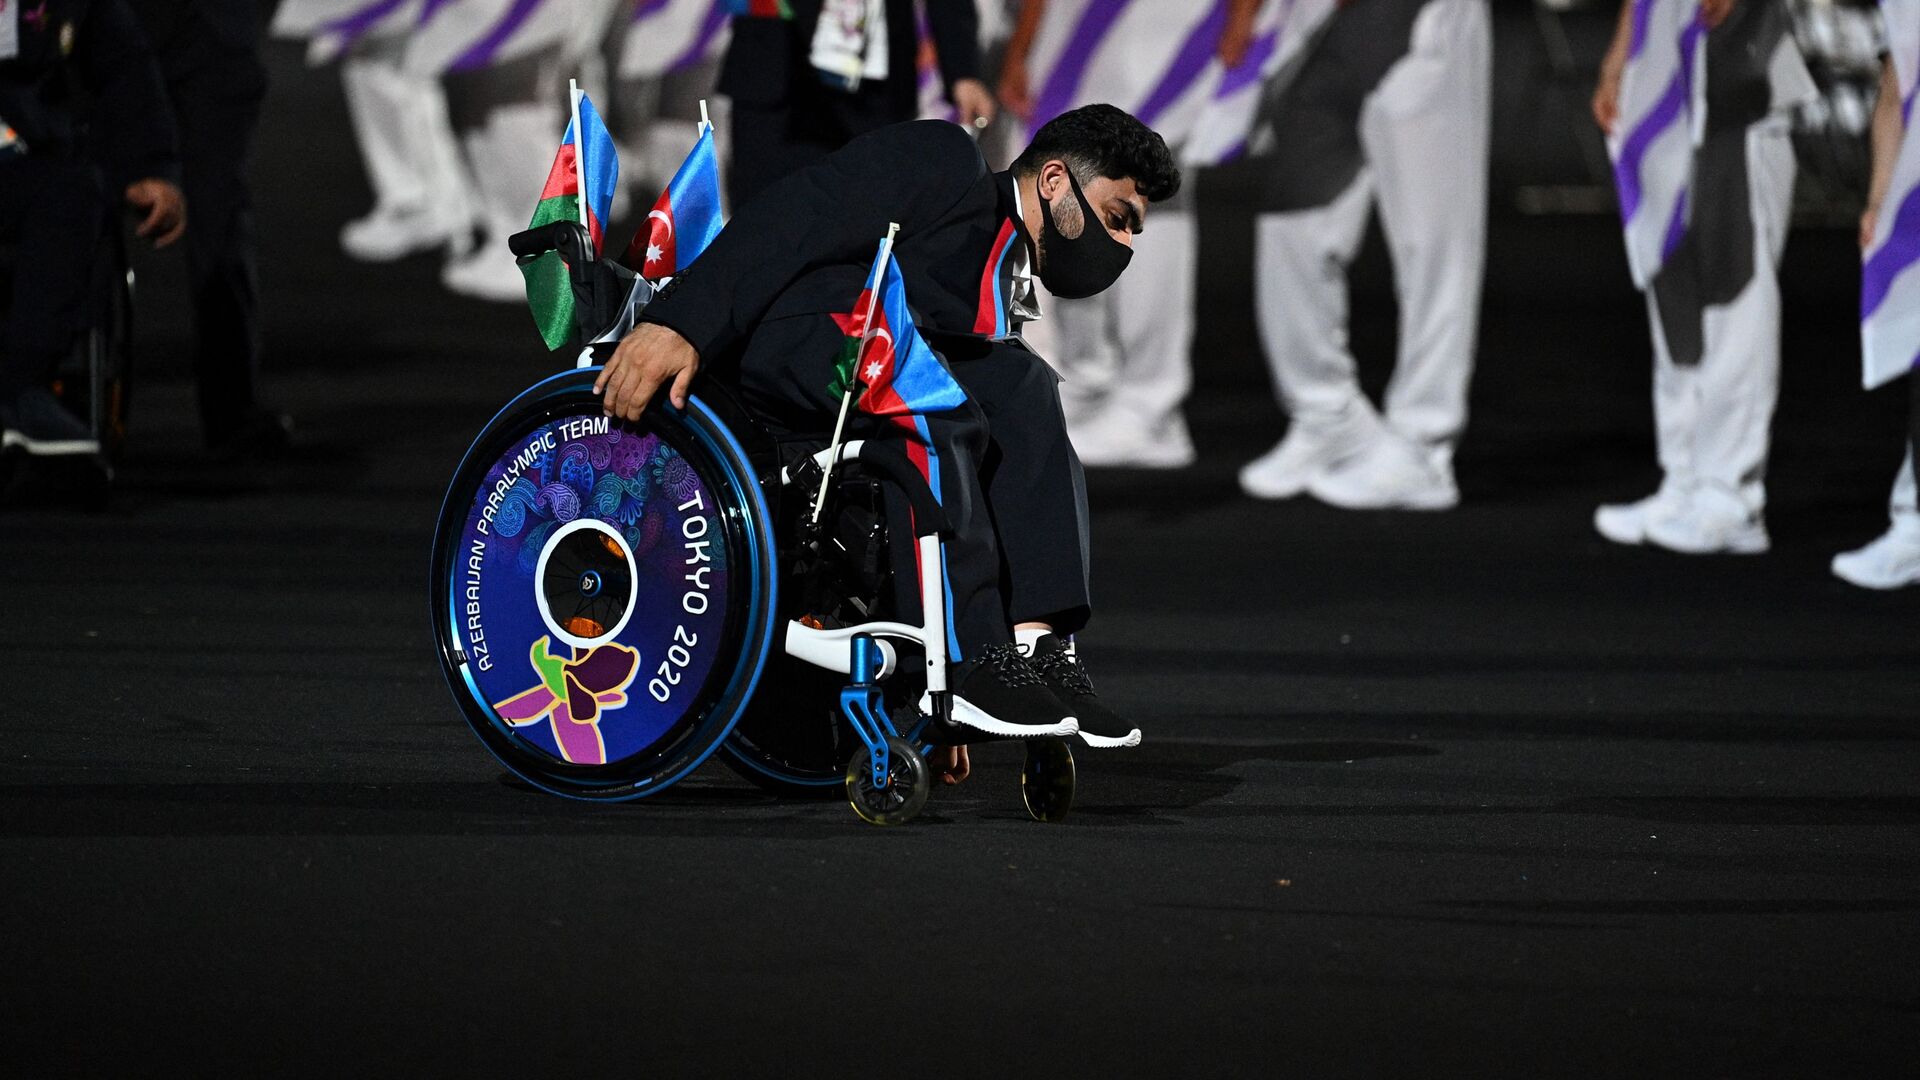 Член сборной Азербайджана прибыл на церемонию открытия Паралимпийских игр 2020 года в Токио в Токио 24 августа 2021 года - Sputnik Азербайджан, 1920, 30.08.2021